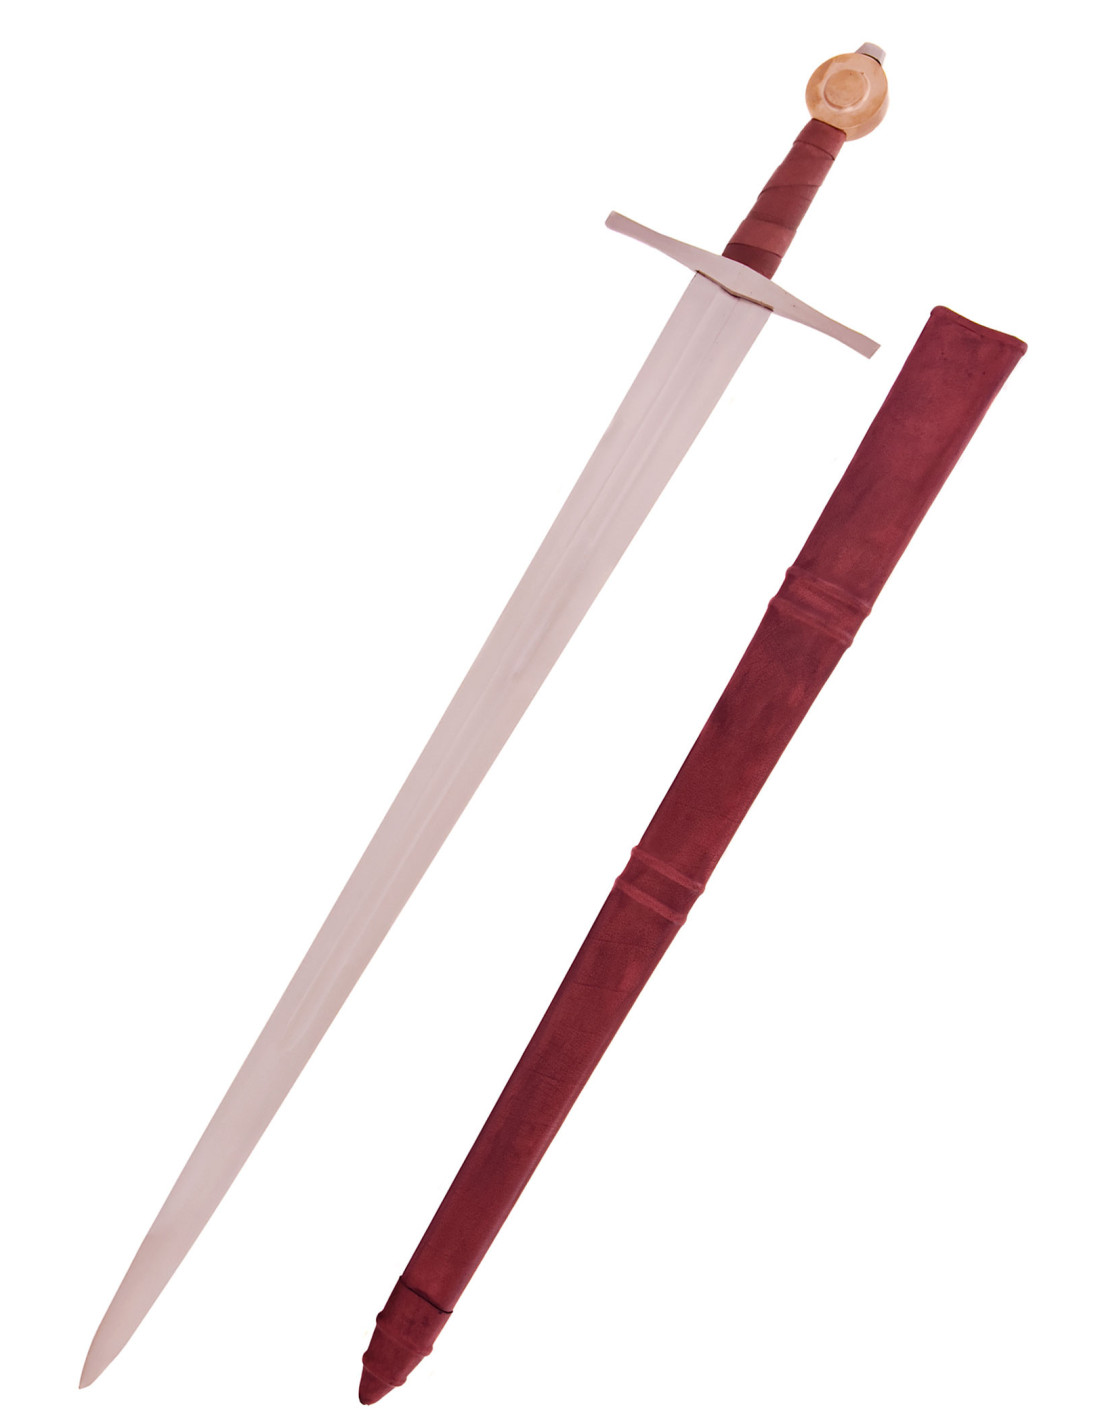 Espada Bruce, espada medieval de una mano con vaina